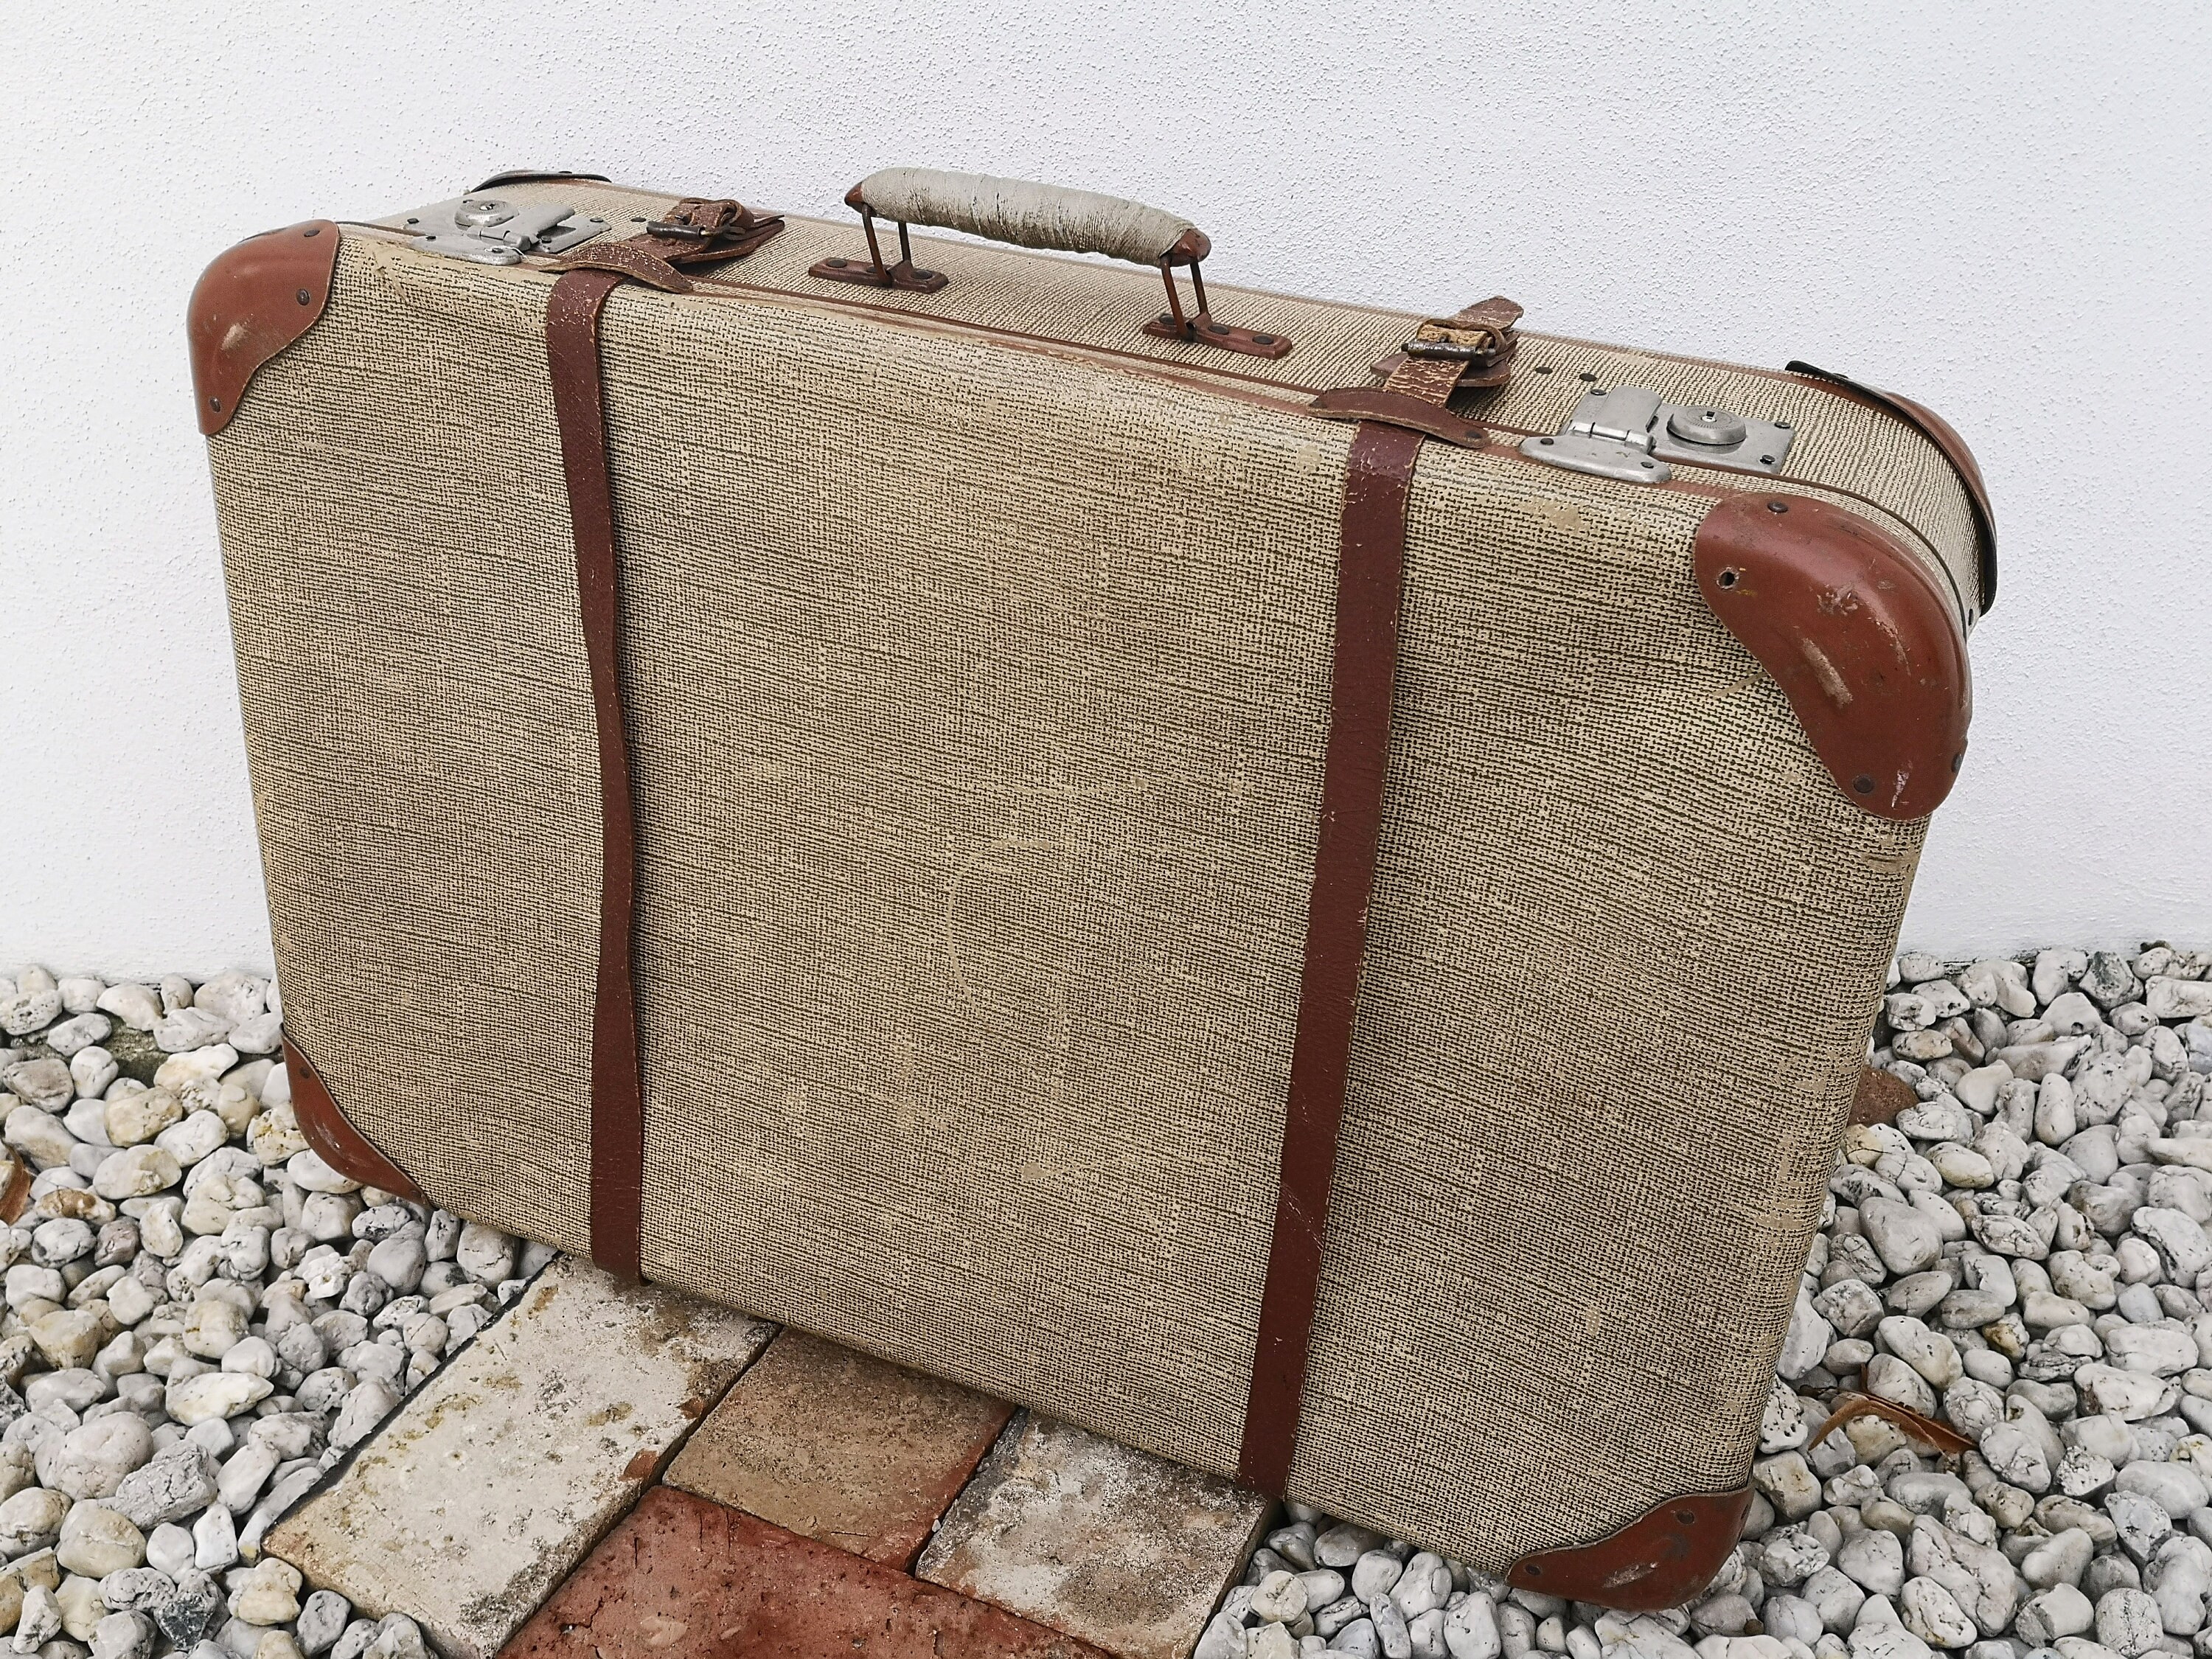 Louis Vuitton lance une valise connectée, tout bon pour faire